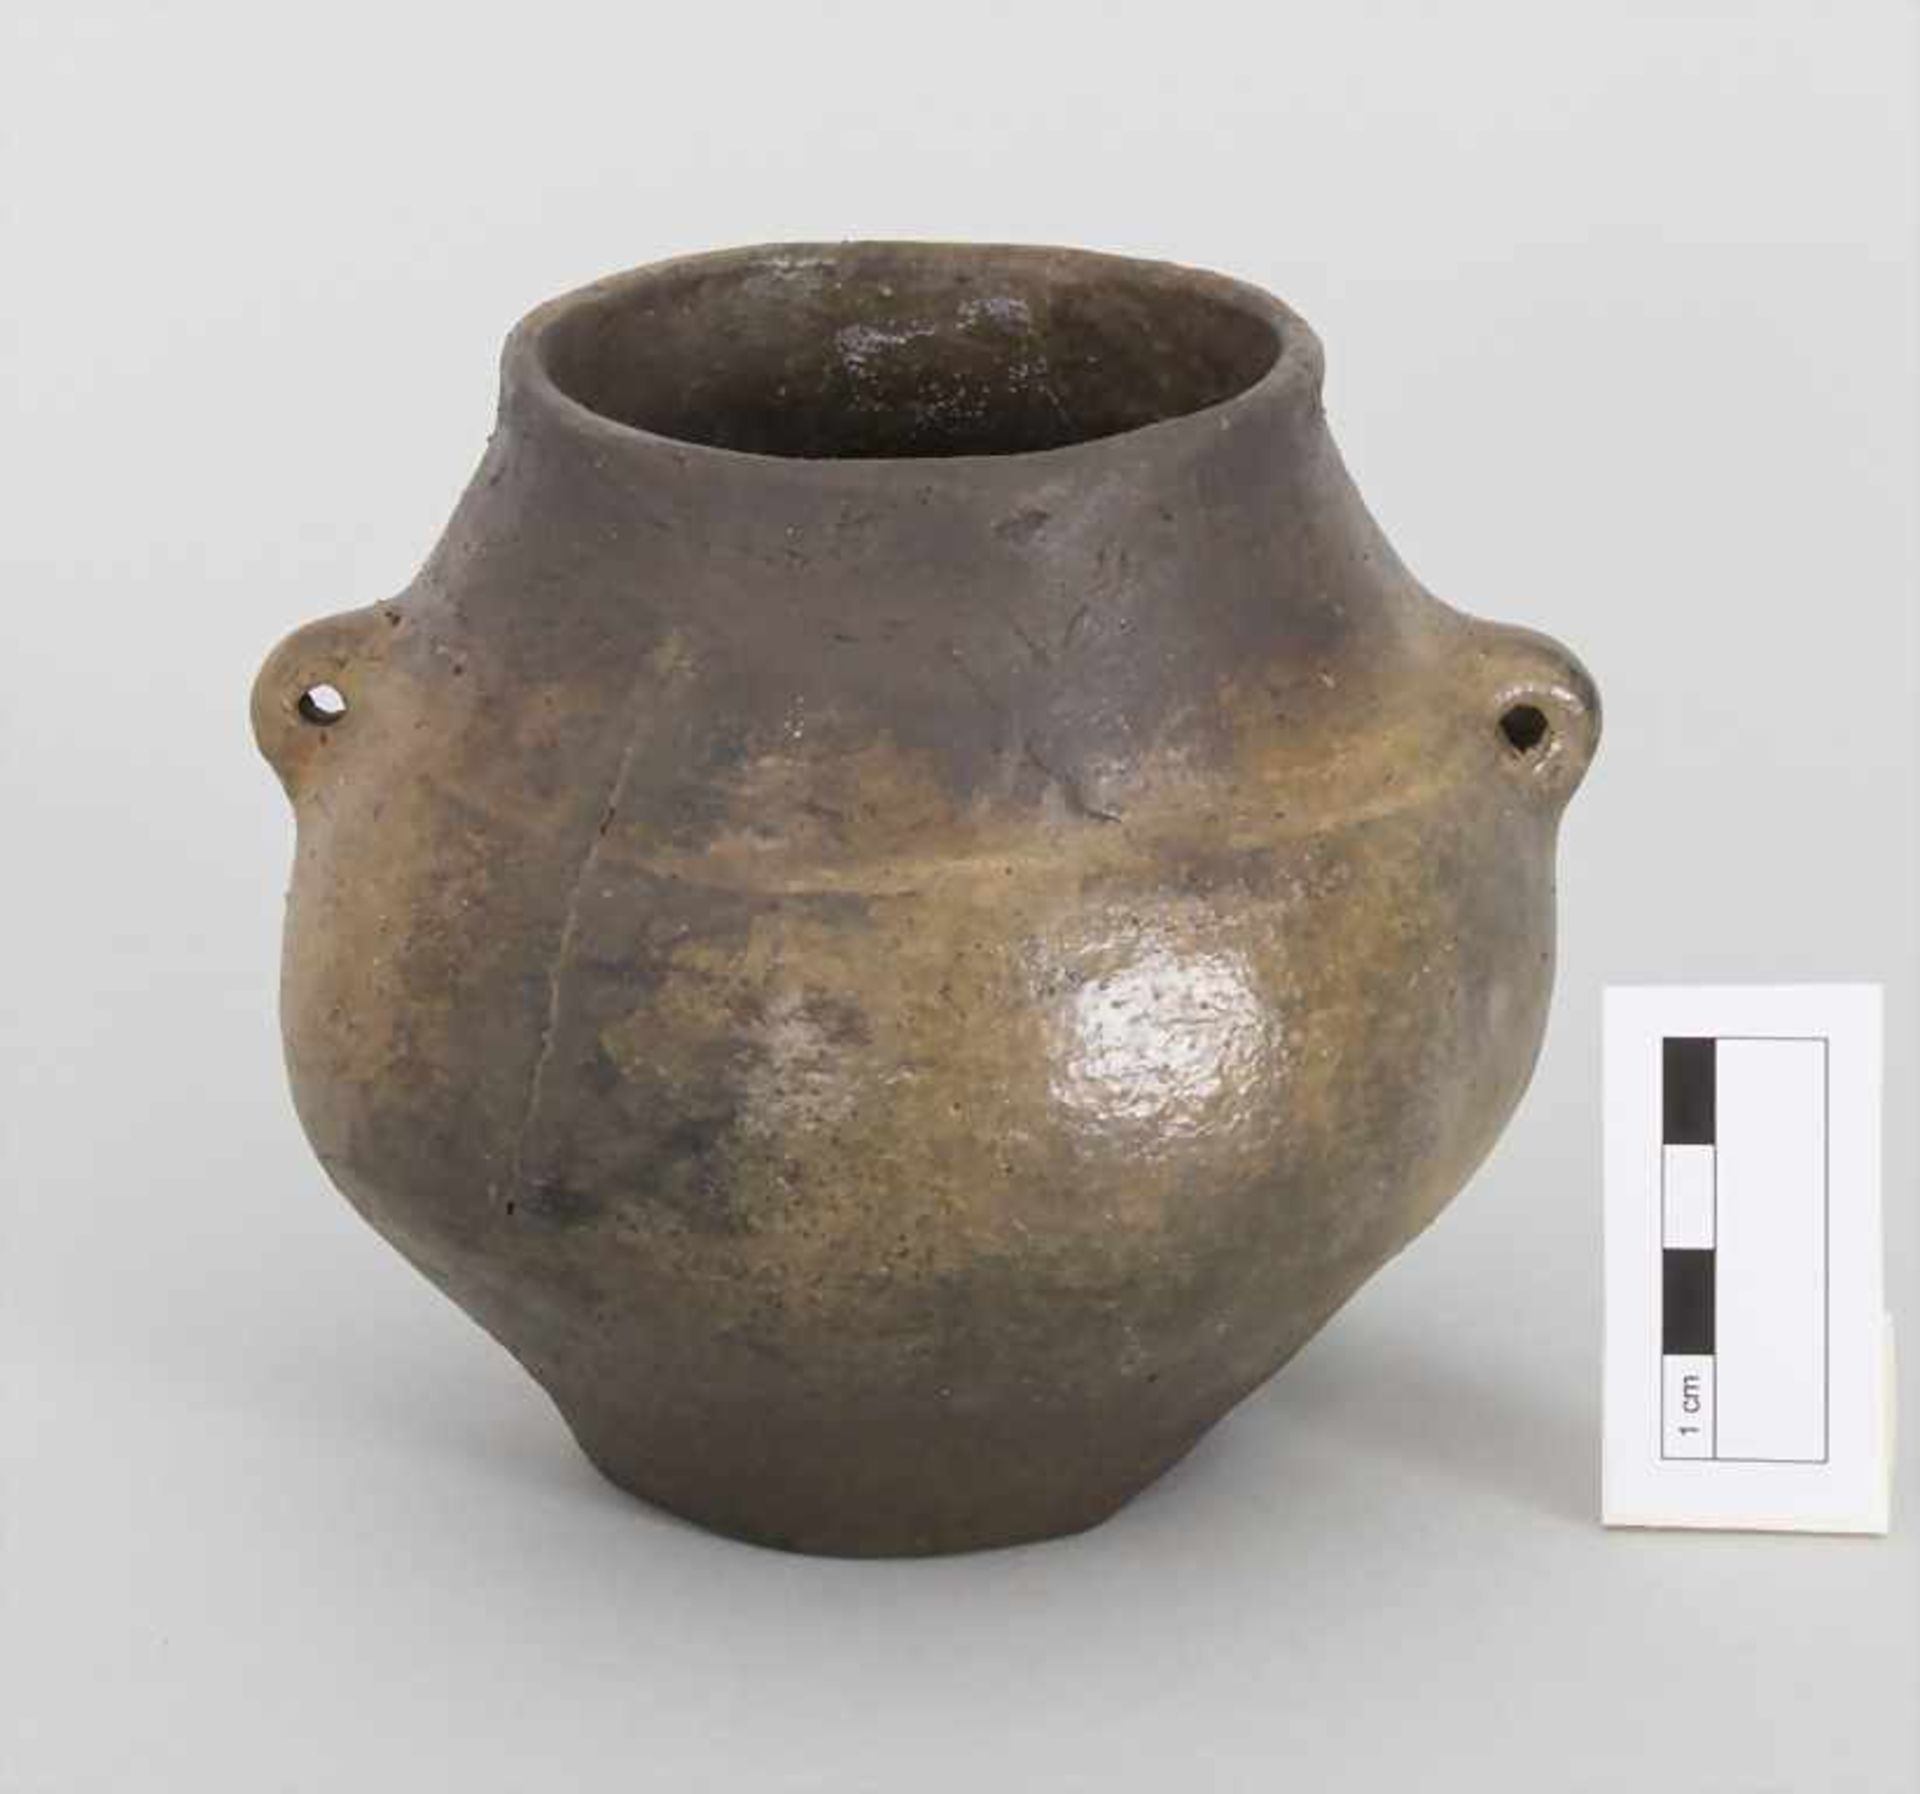 Bronzezeitliches Keramik-Gefäß / A Bronze Age ceramic vessel, Lausitzer Kultur, 9. - 6. Jh. v. Chr. - Bild 2 aus 5